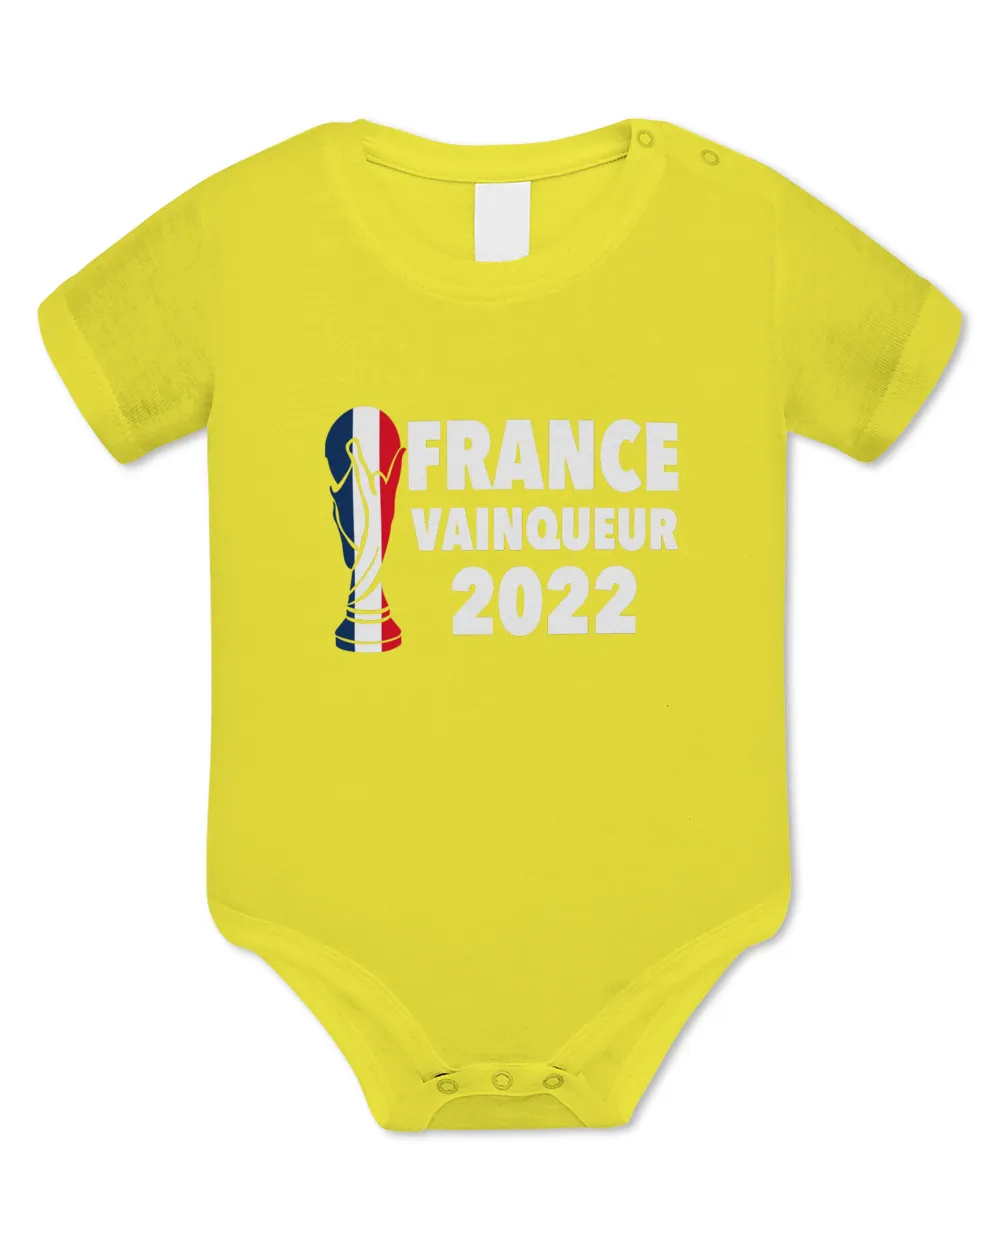 France Vainqueur 2022